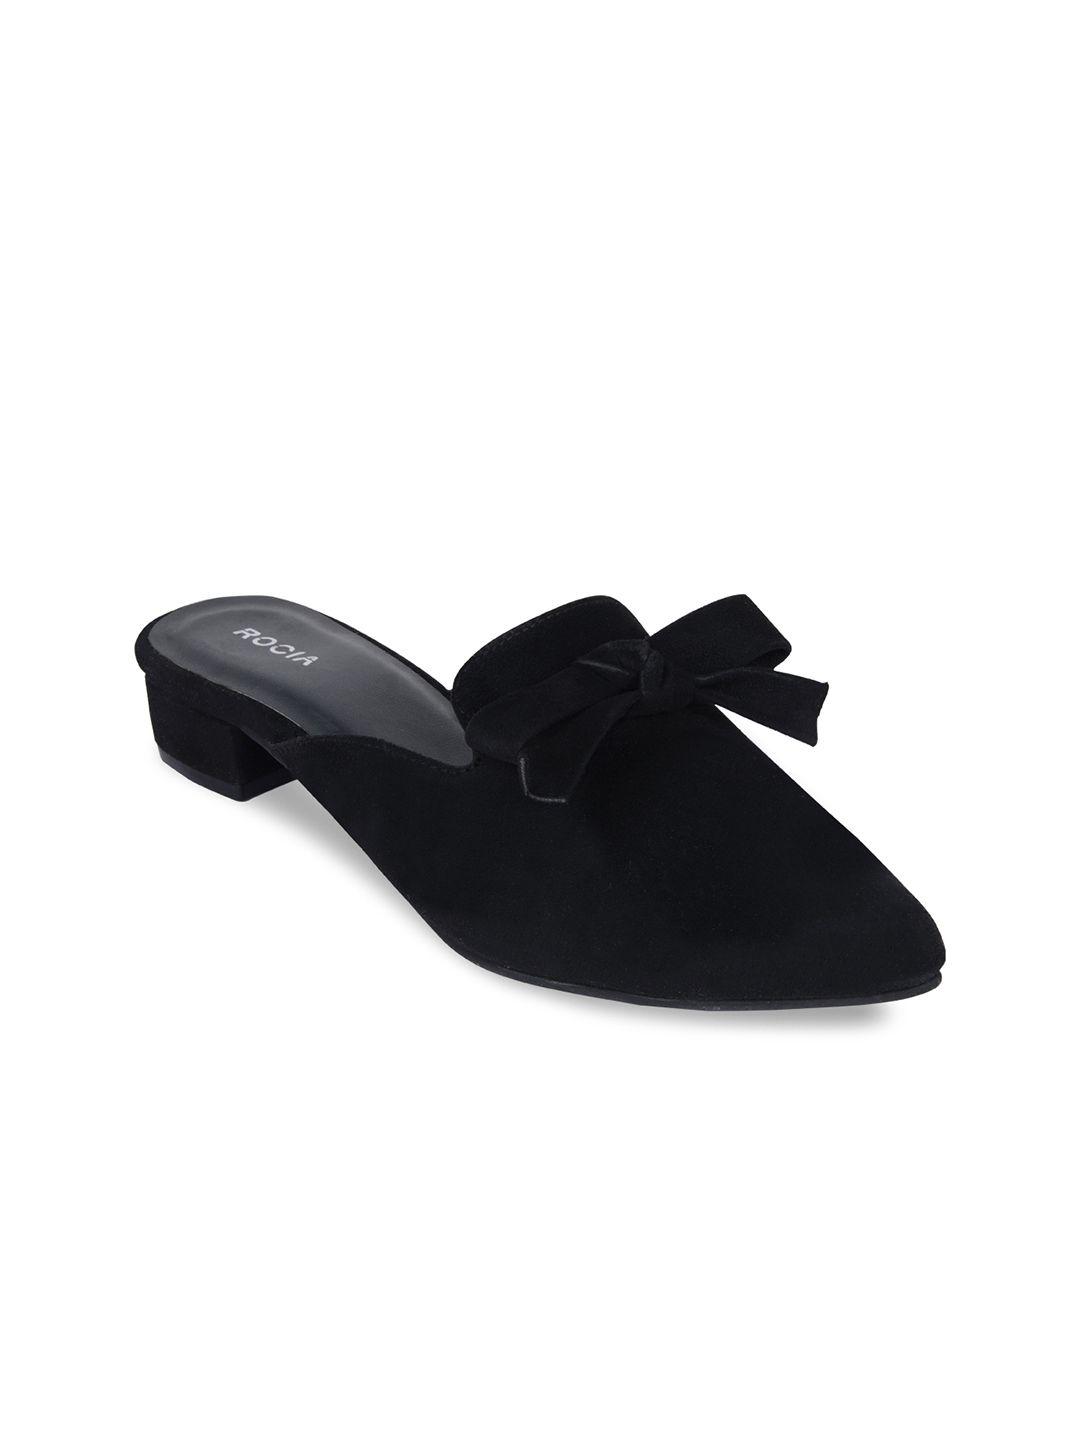 rocia-black-solid-kitten-heel-sandals